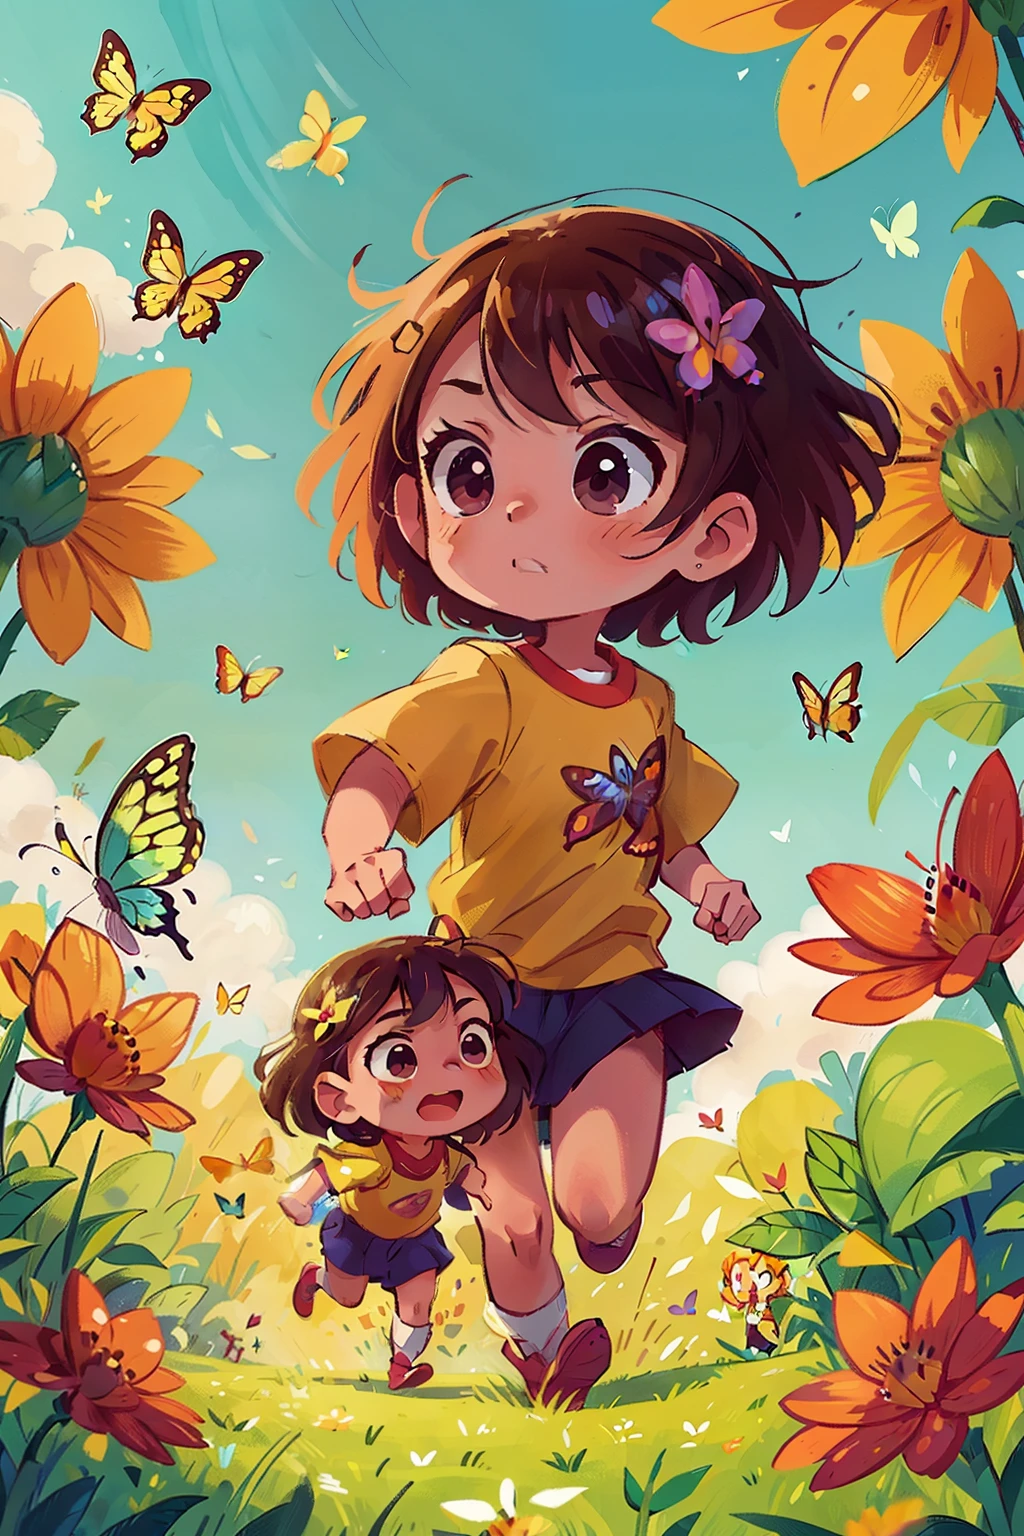 꽃밭에서 행복하게 달리는 두 명의 아주 어린 소녀의 이미지를 생성합니다., 다양한 색상의 나비로 둘러싸여 있습니다.